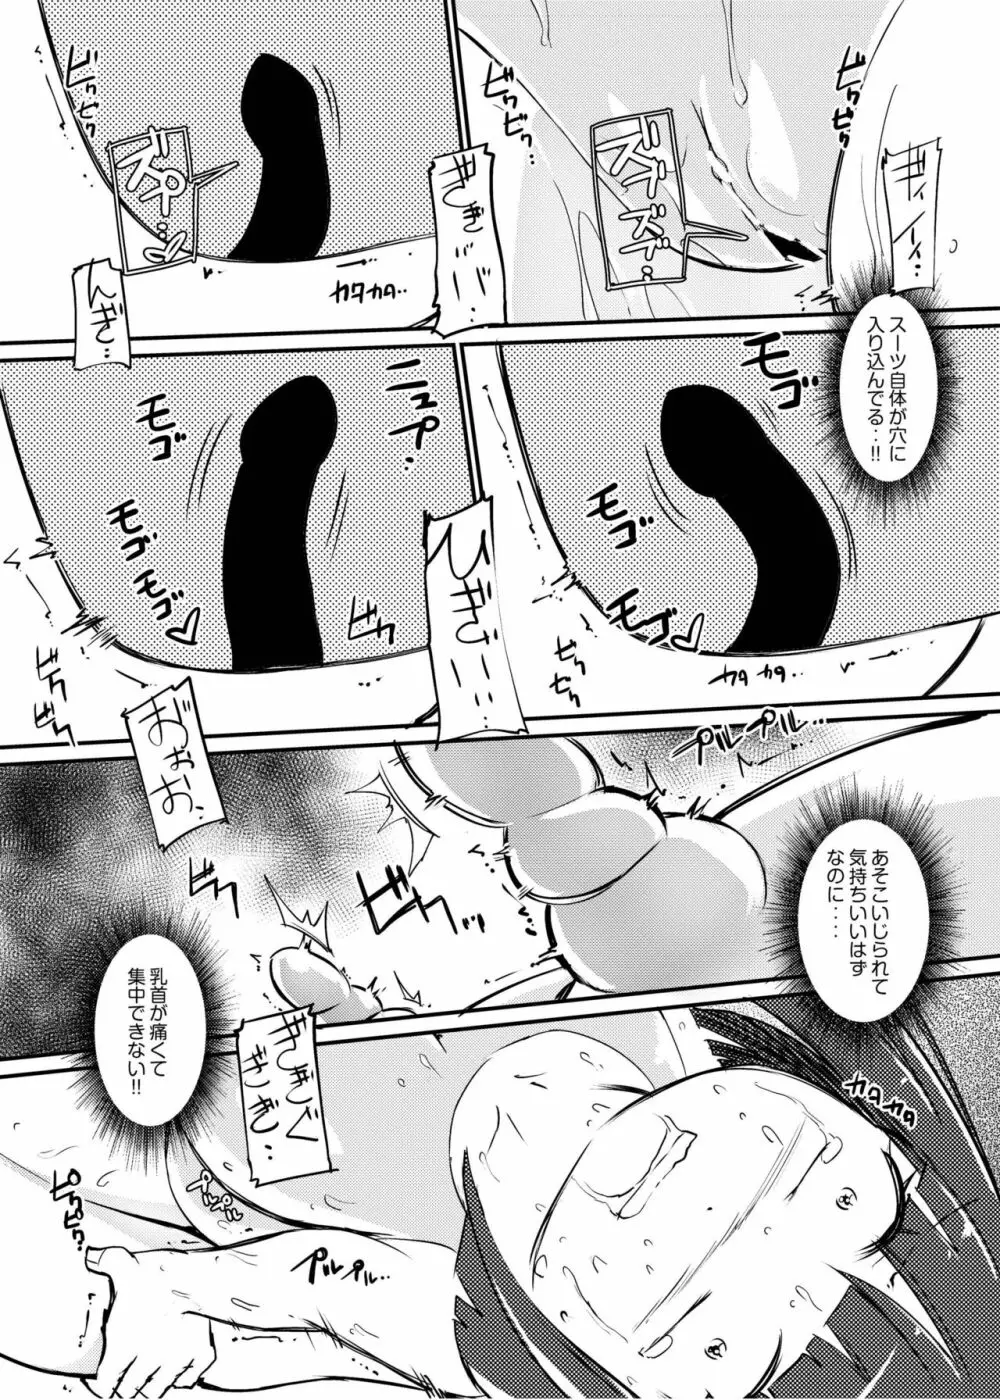 [俗物.zip (雪あすか)] 俗物.zip (11) 恋猫 [DL版] 21ページ